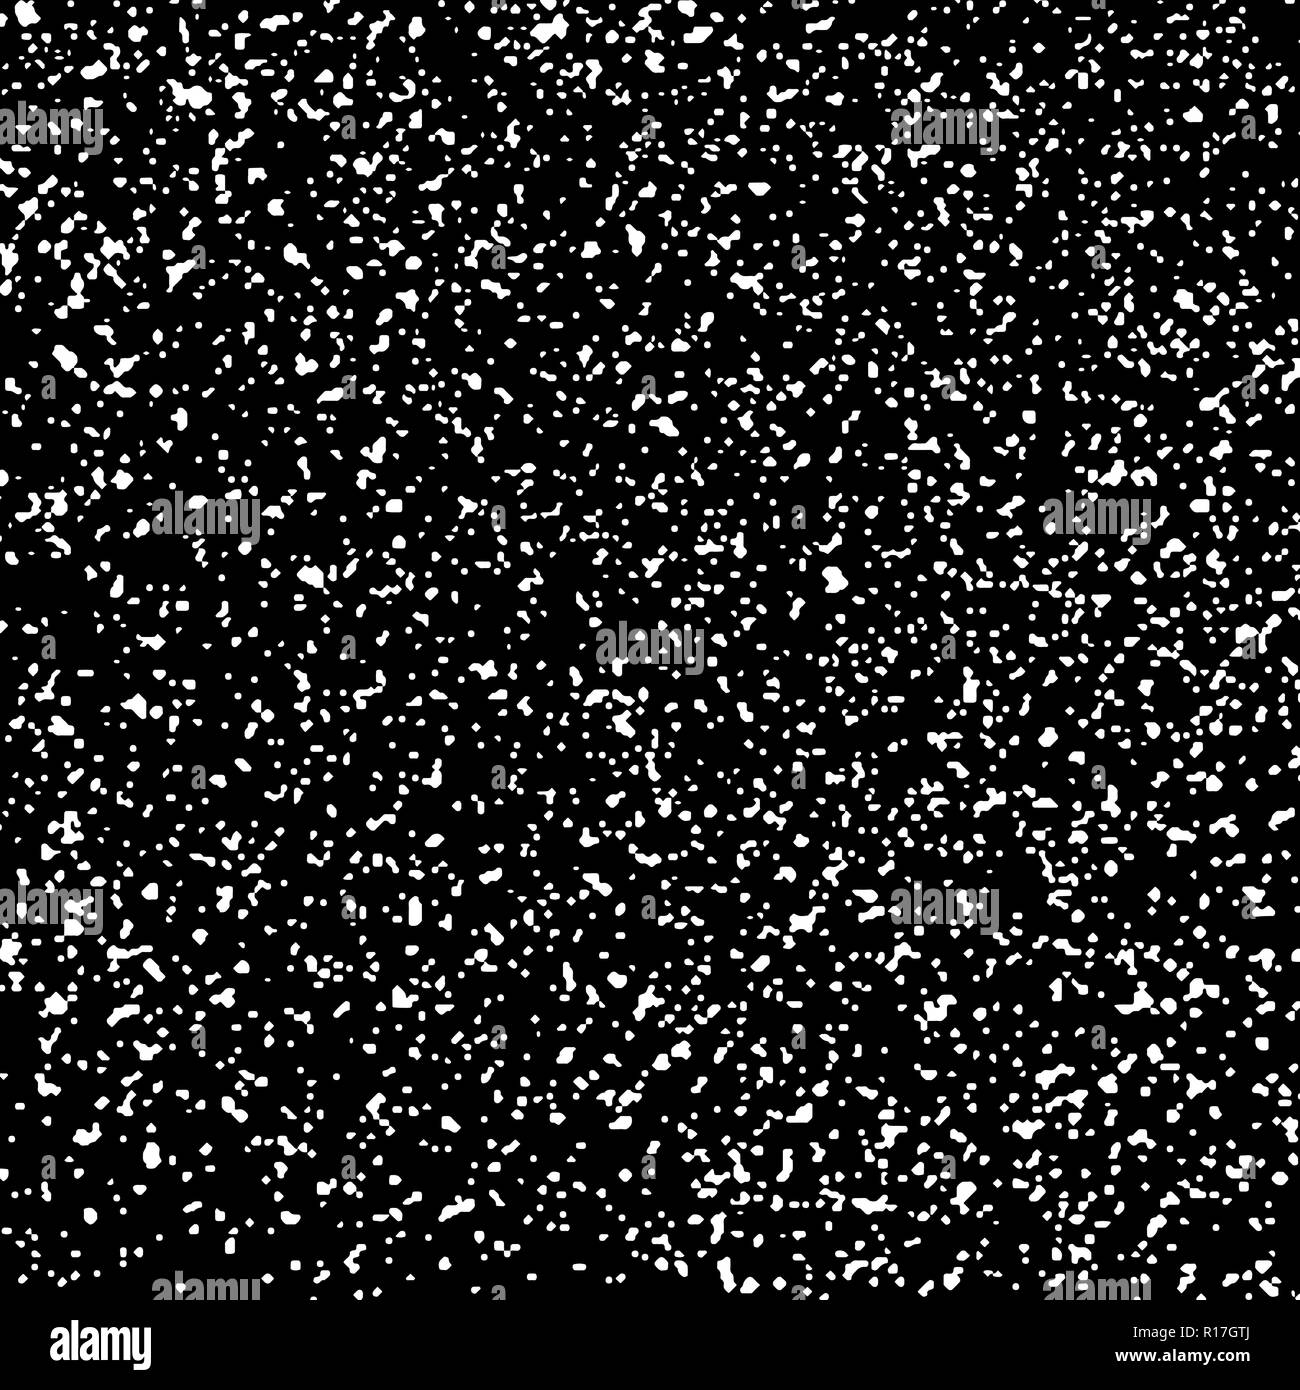 Sgranate texture astratte su sfondo nero. I fiocchi di neve elemento di design. Angoscia overlay testurizzate. Illustrazione Vettoriale eps,10. Illustrazione Vettoriale